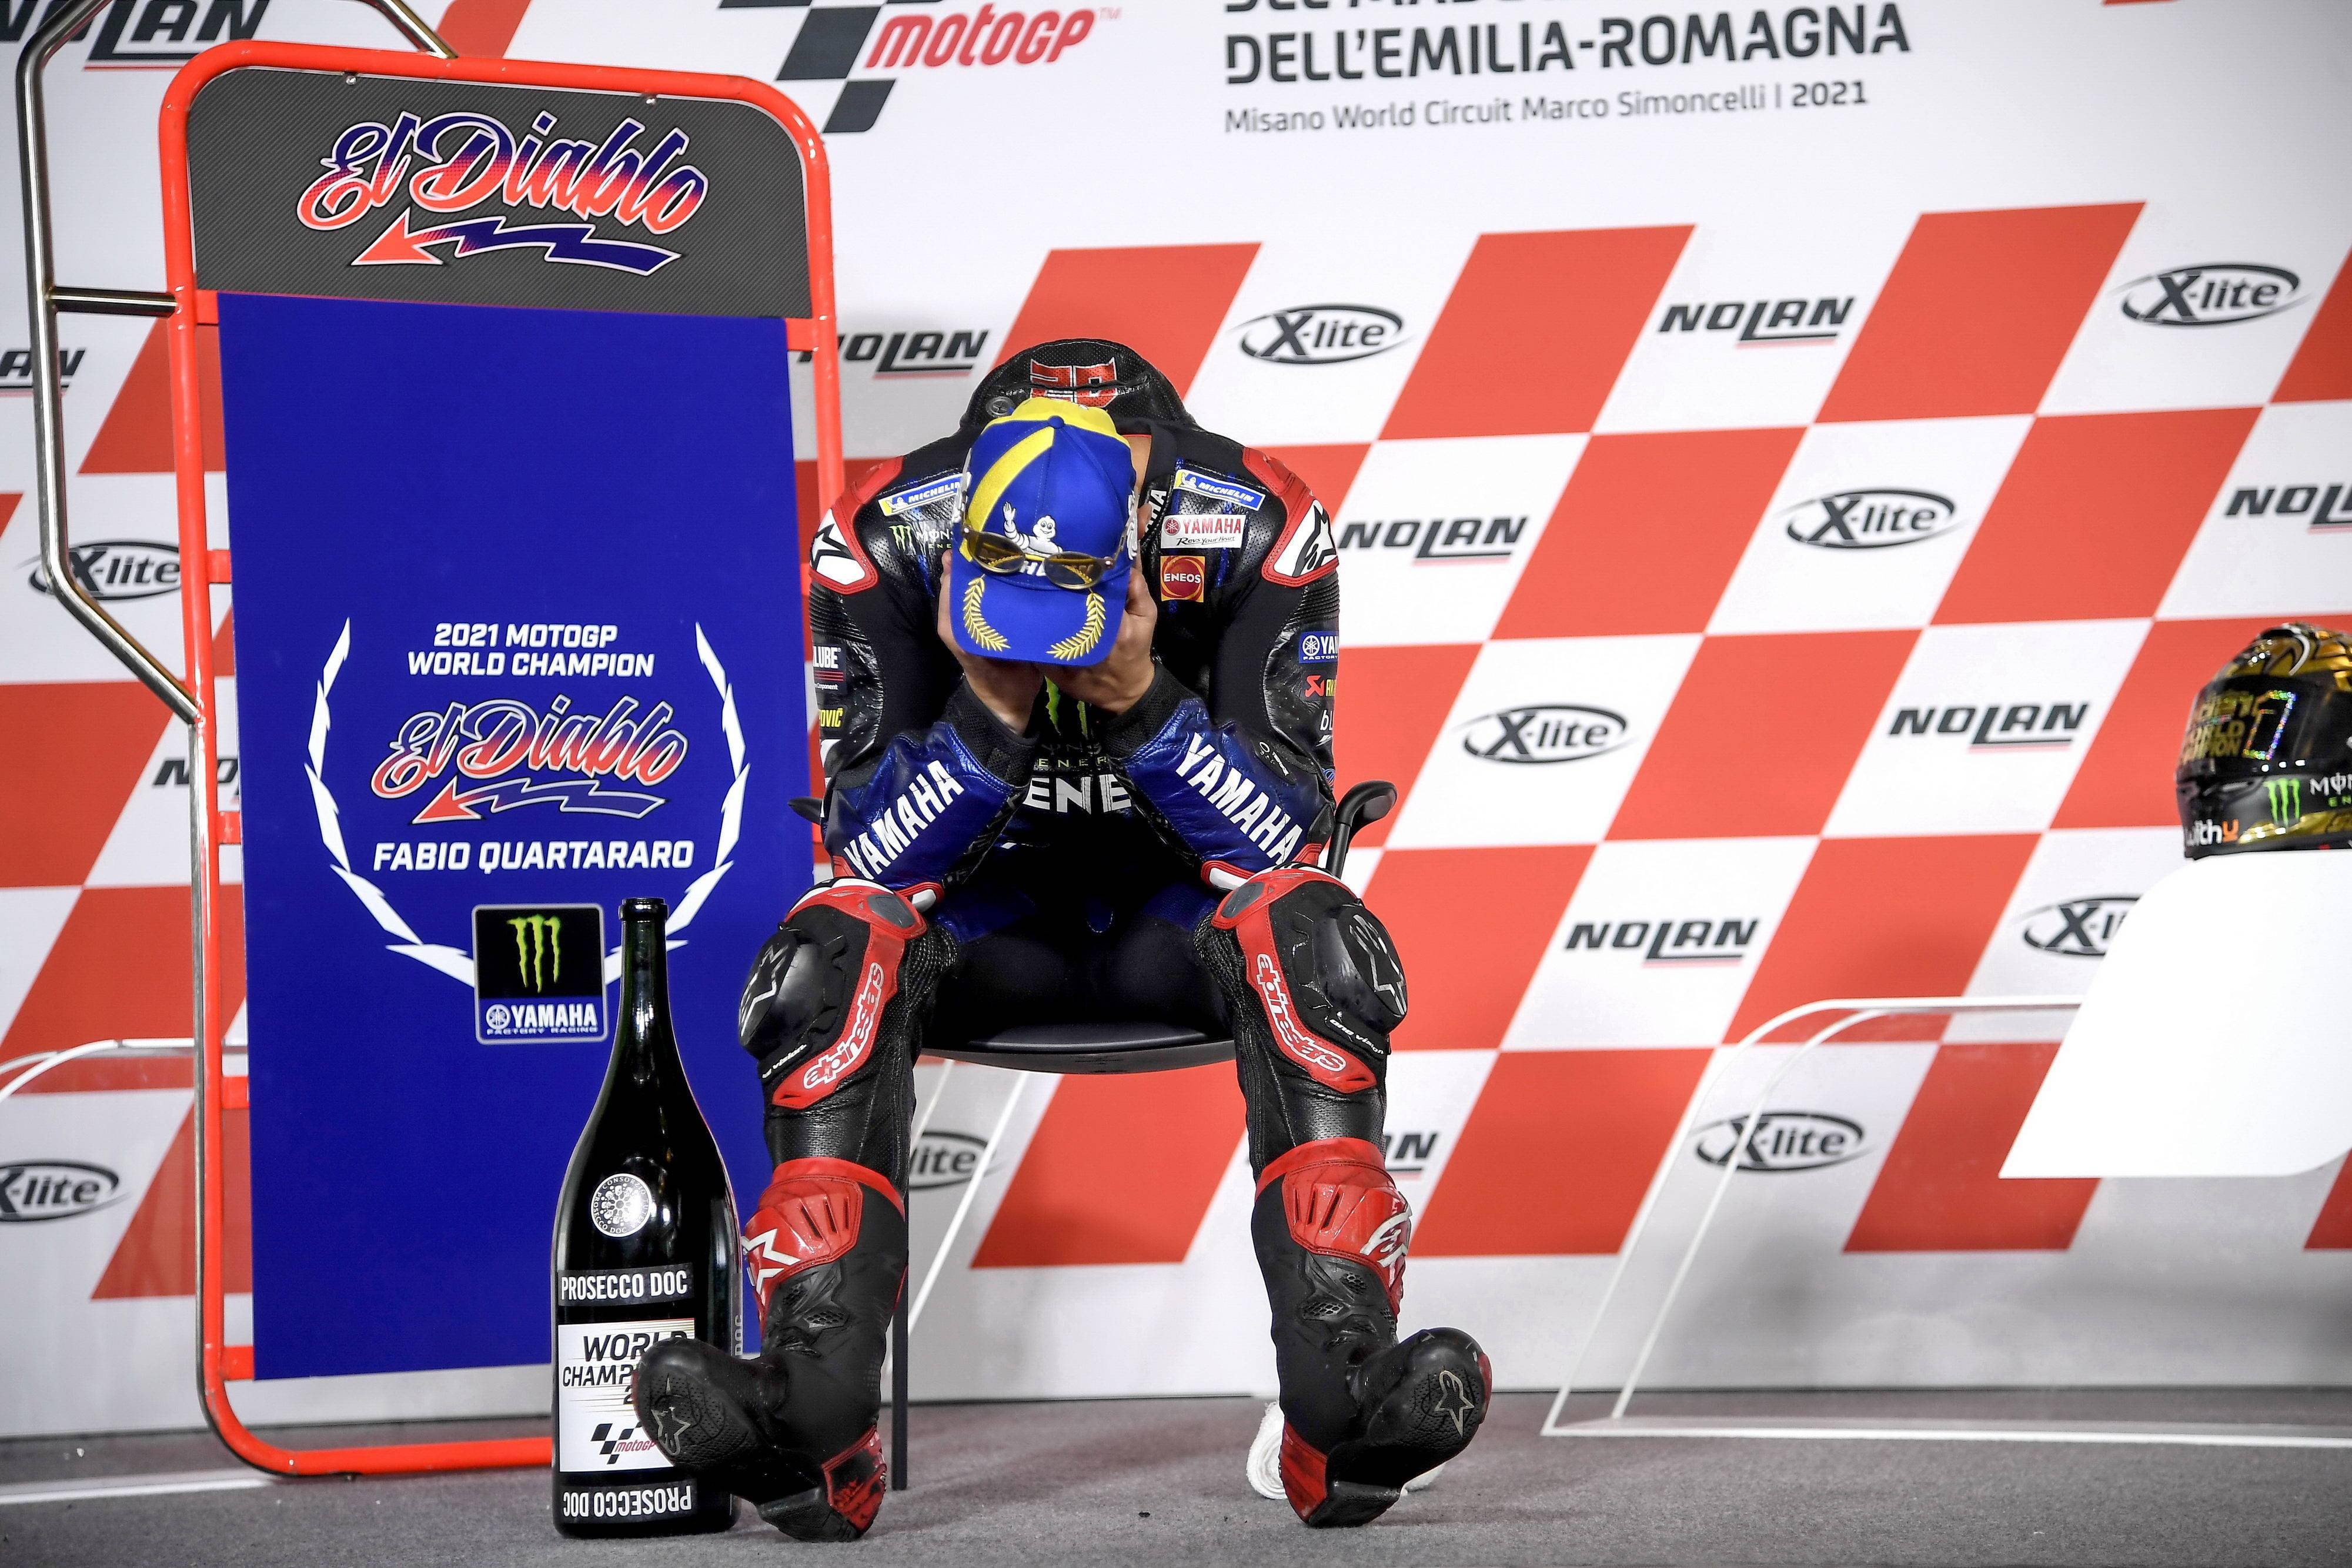 夺冠时刻:2021 motogp 世界冠军 夸塔拉罗